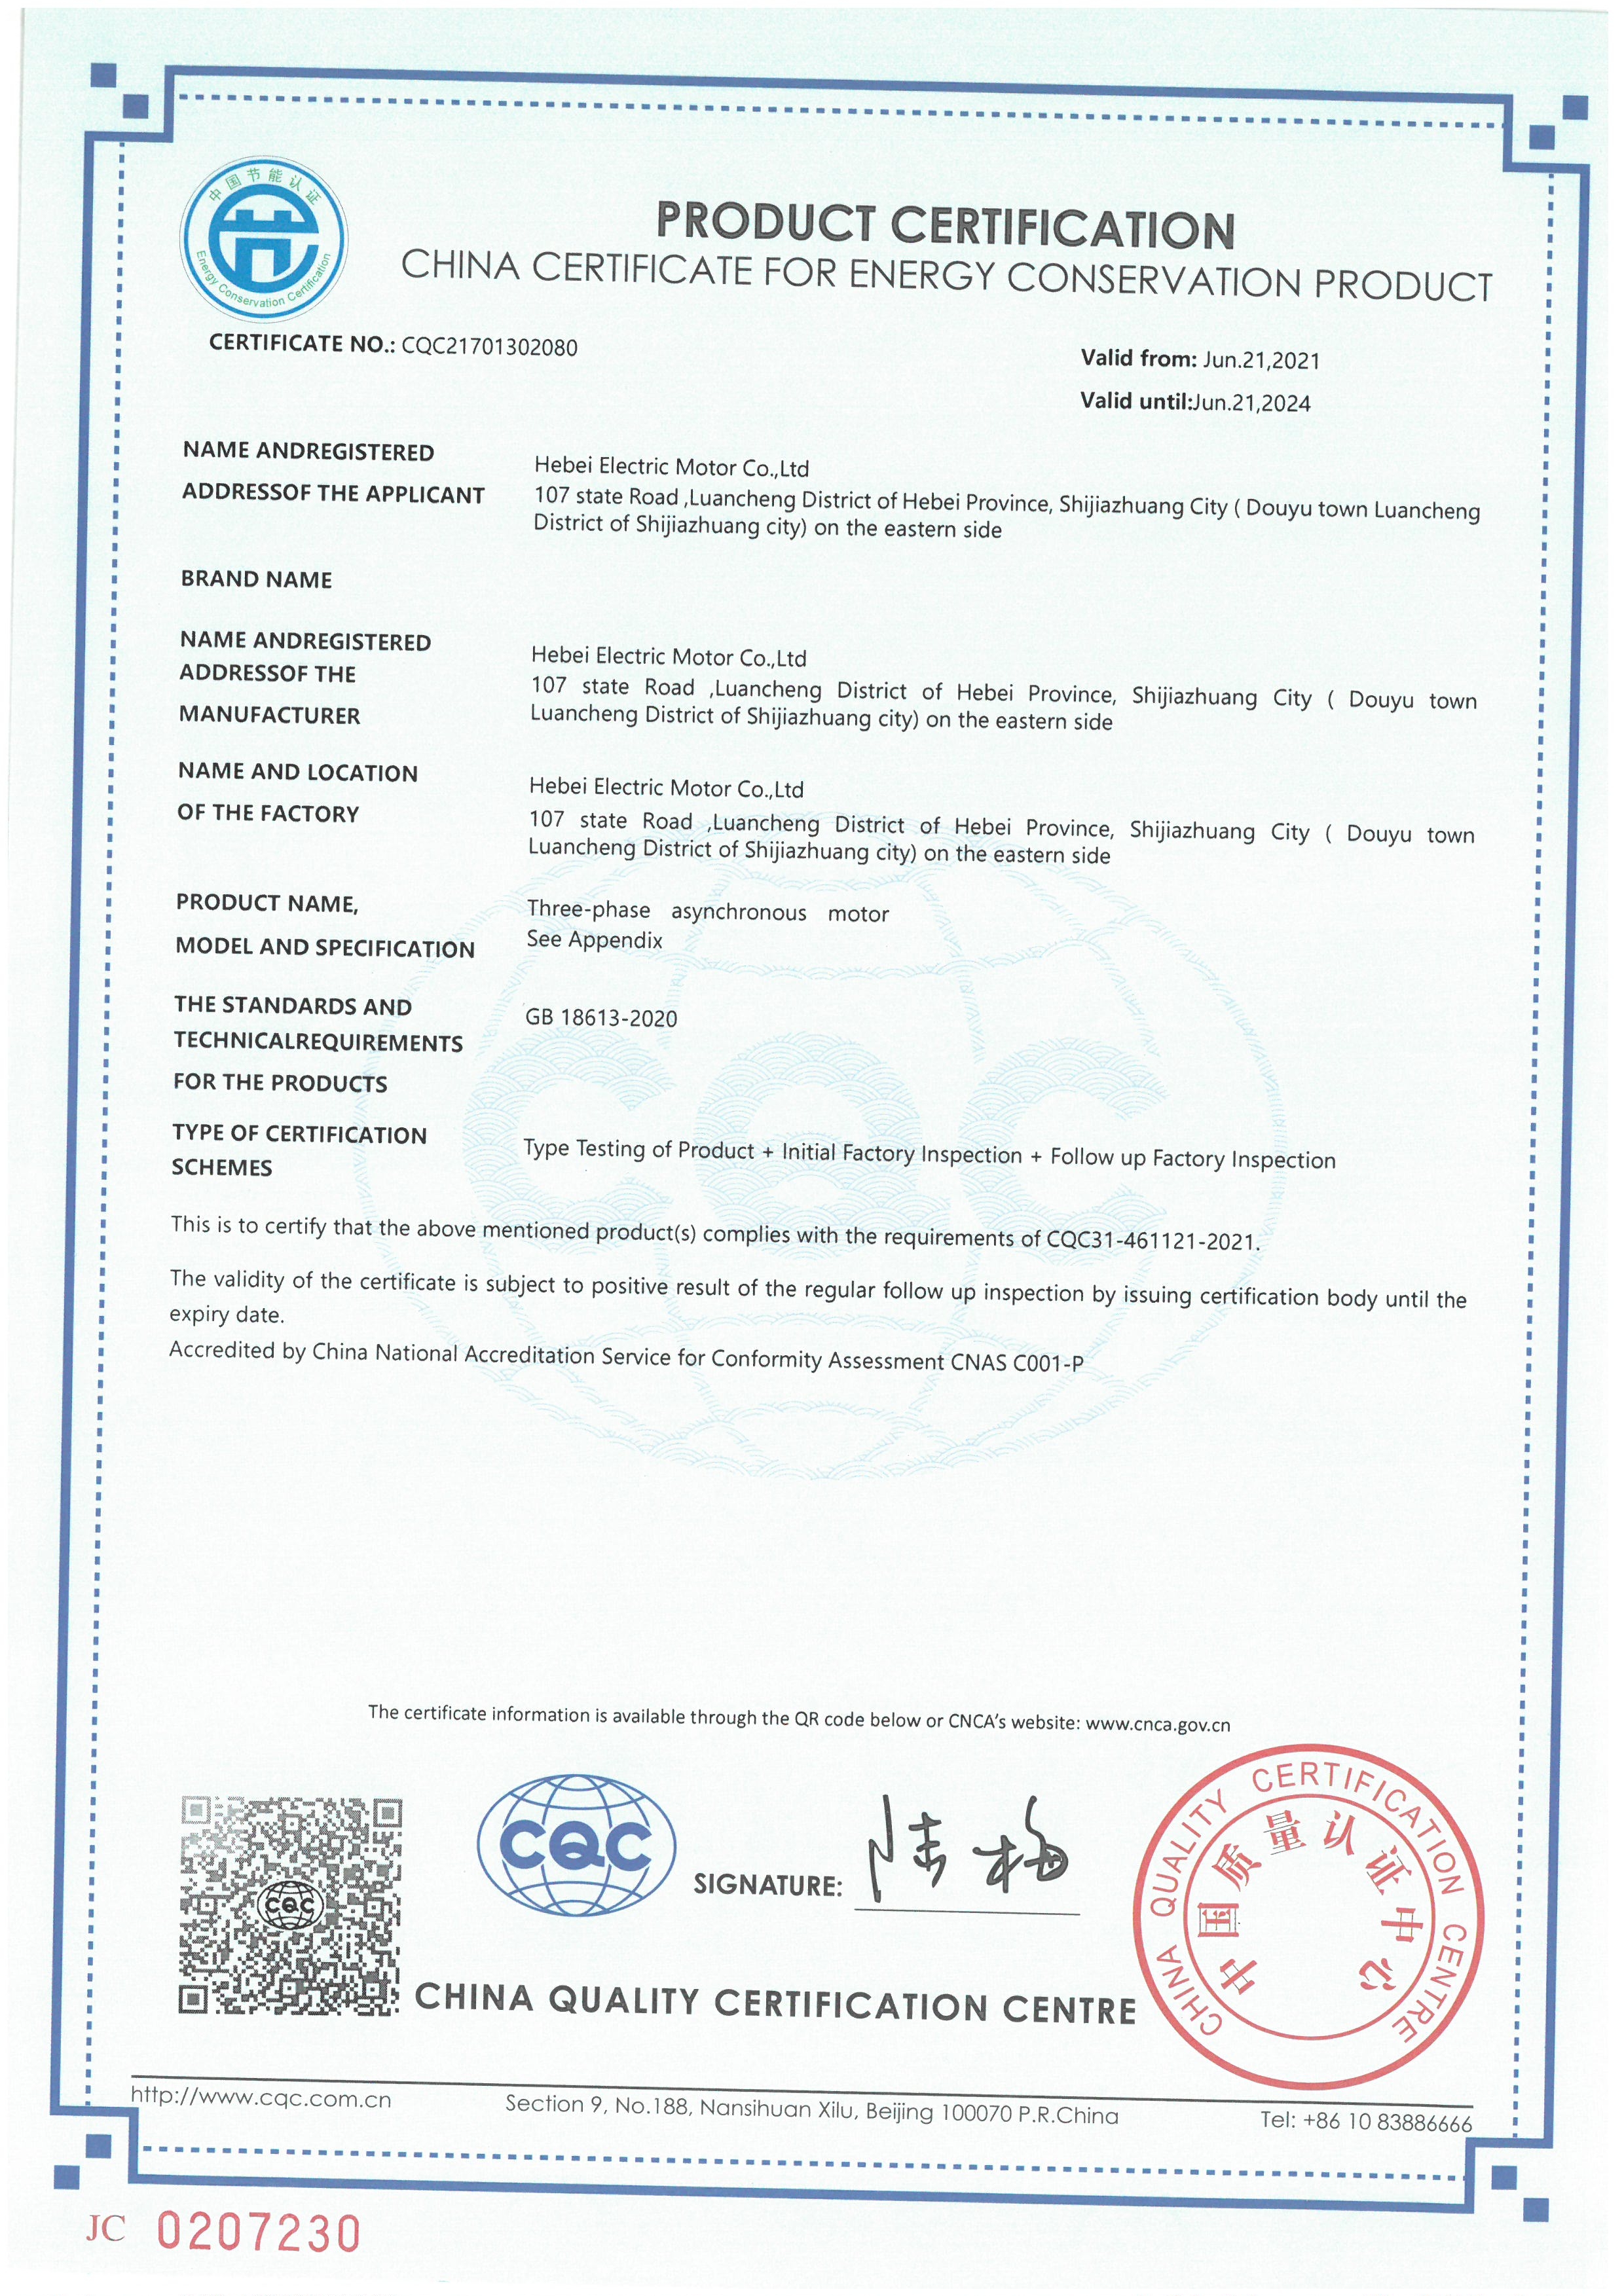 Двигатели серии YE4 получили «Китайский сертификат на энергосберегающую продукцию»